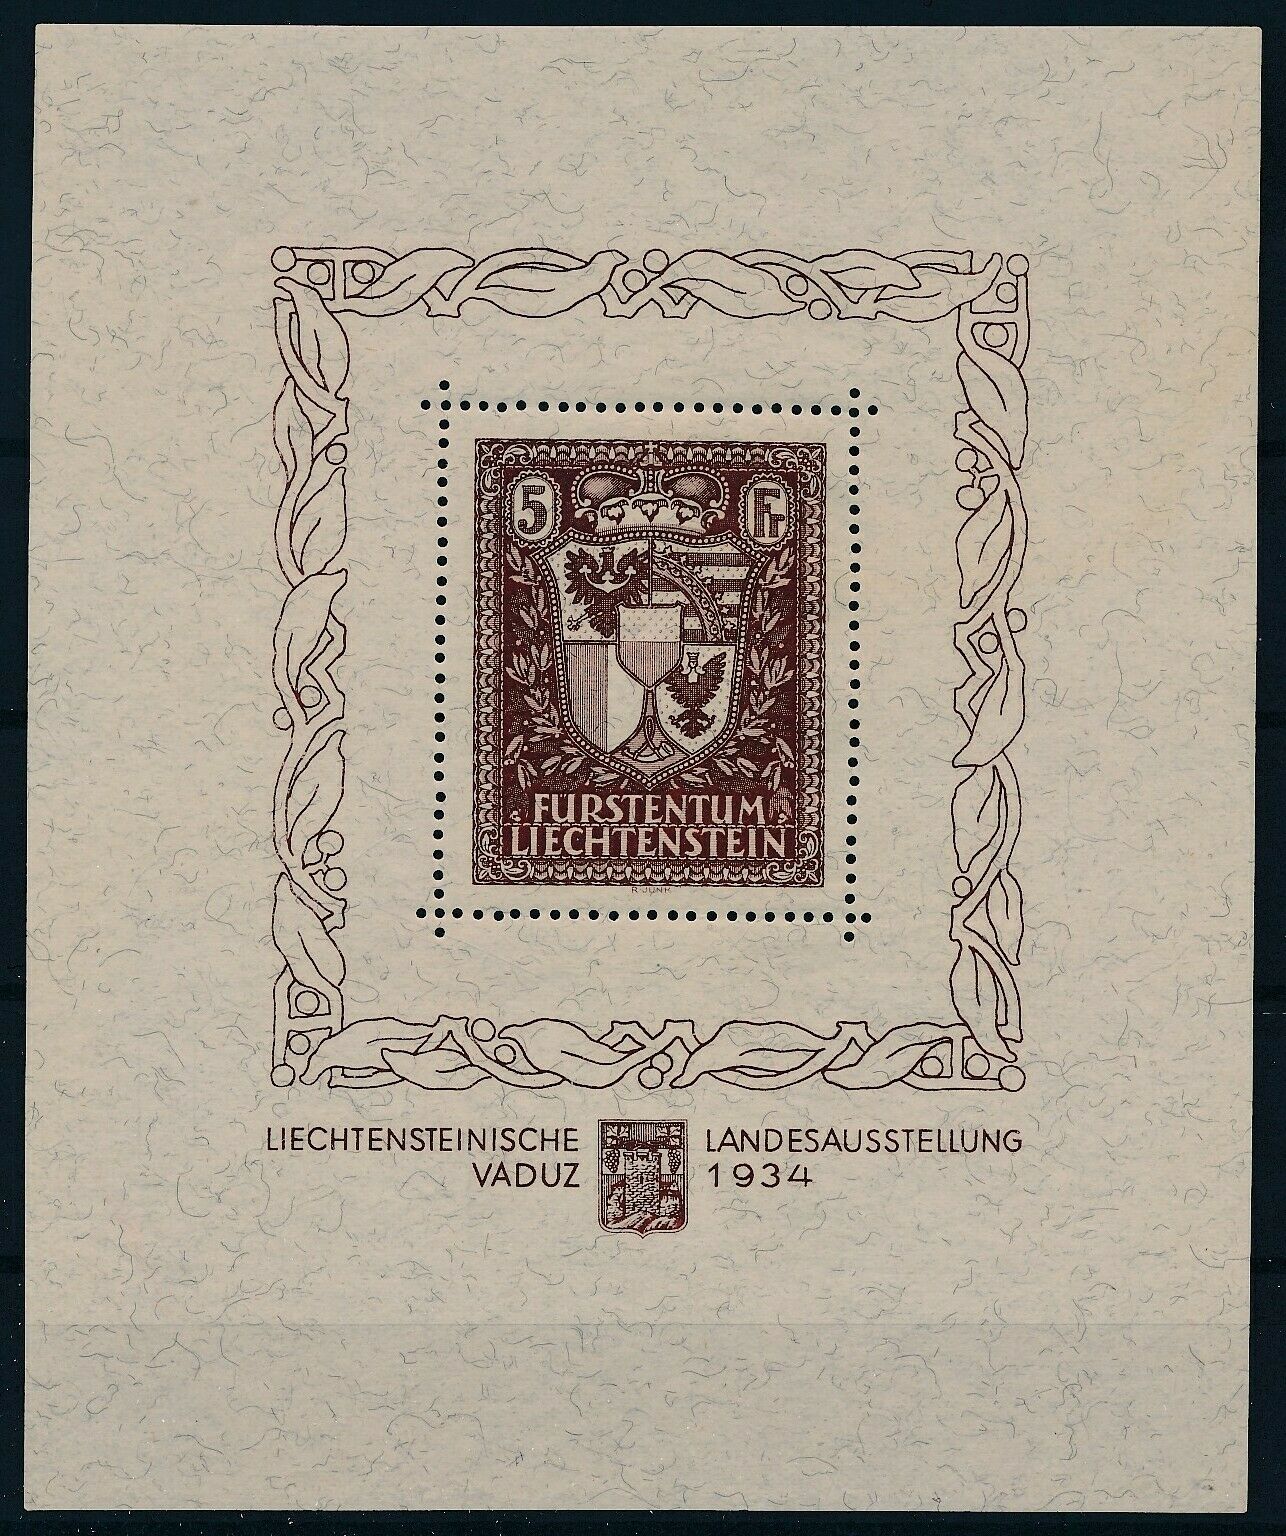 [g11813] Liechtenstein 1934 Vaduz The Rare Sheet Perfect Mnh And Signed